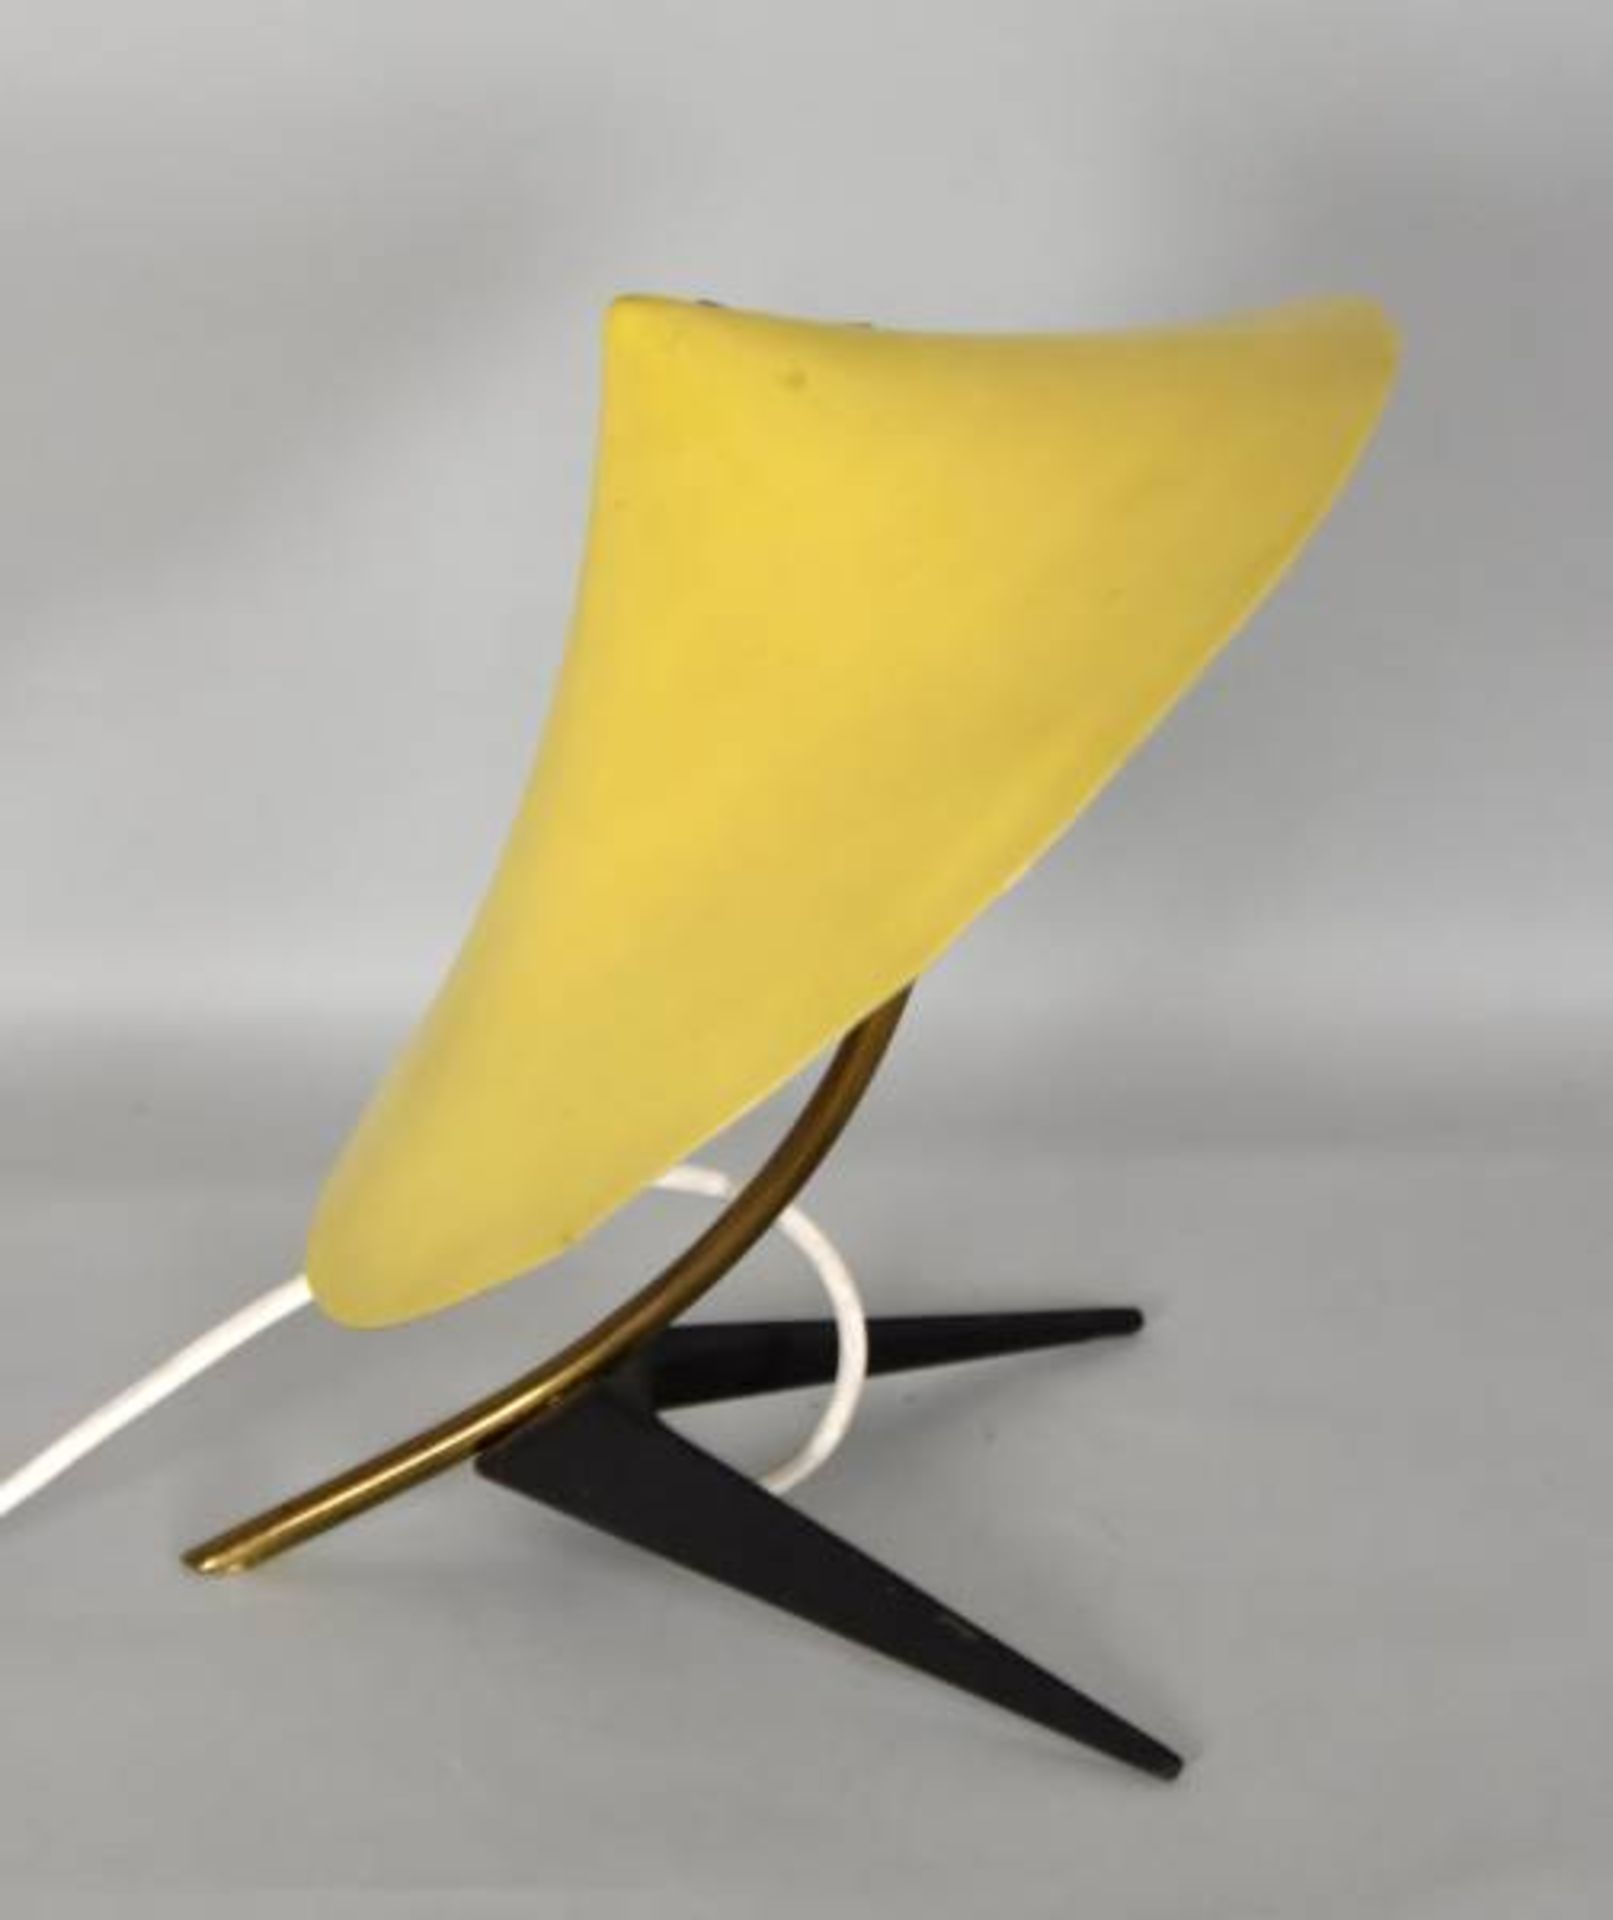 KRÄHENFUSSLAMPE Gelber Schirm aus Alu, geformt wie ein Hut, gebogter Schaft aus Messing, - Bild 4 aus 4